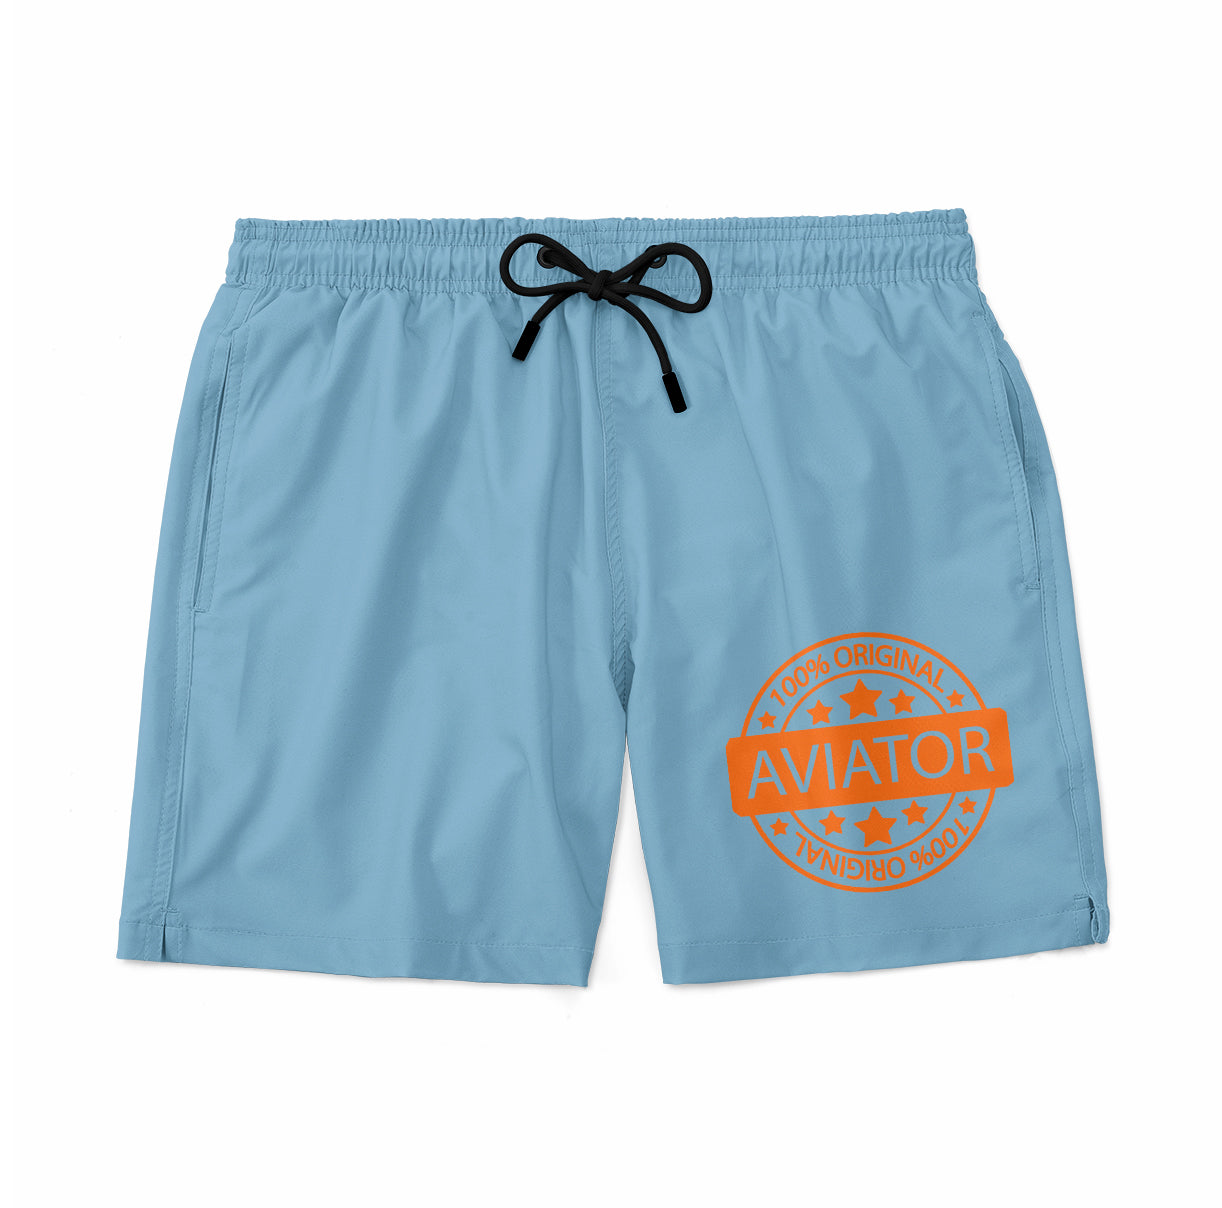 %100 Original Aviator Designed Swim Trunks & Shorts